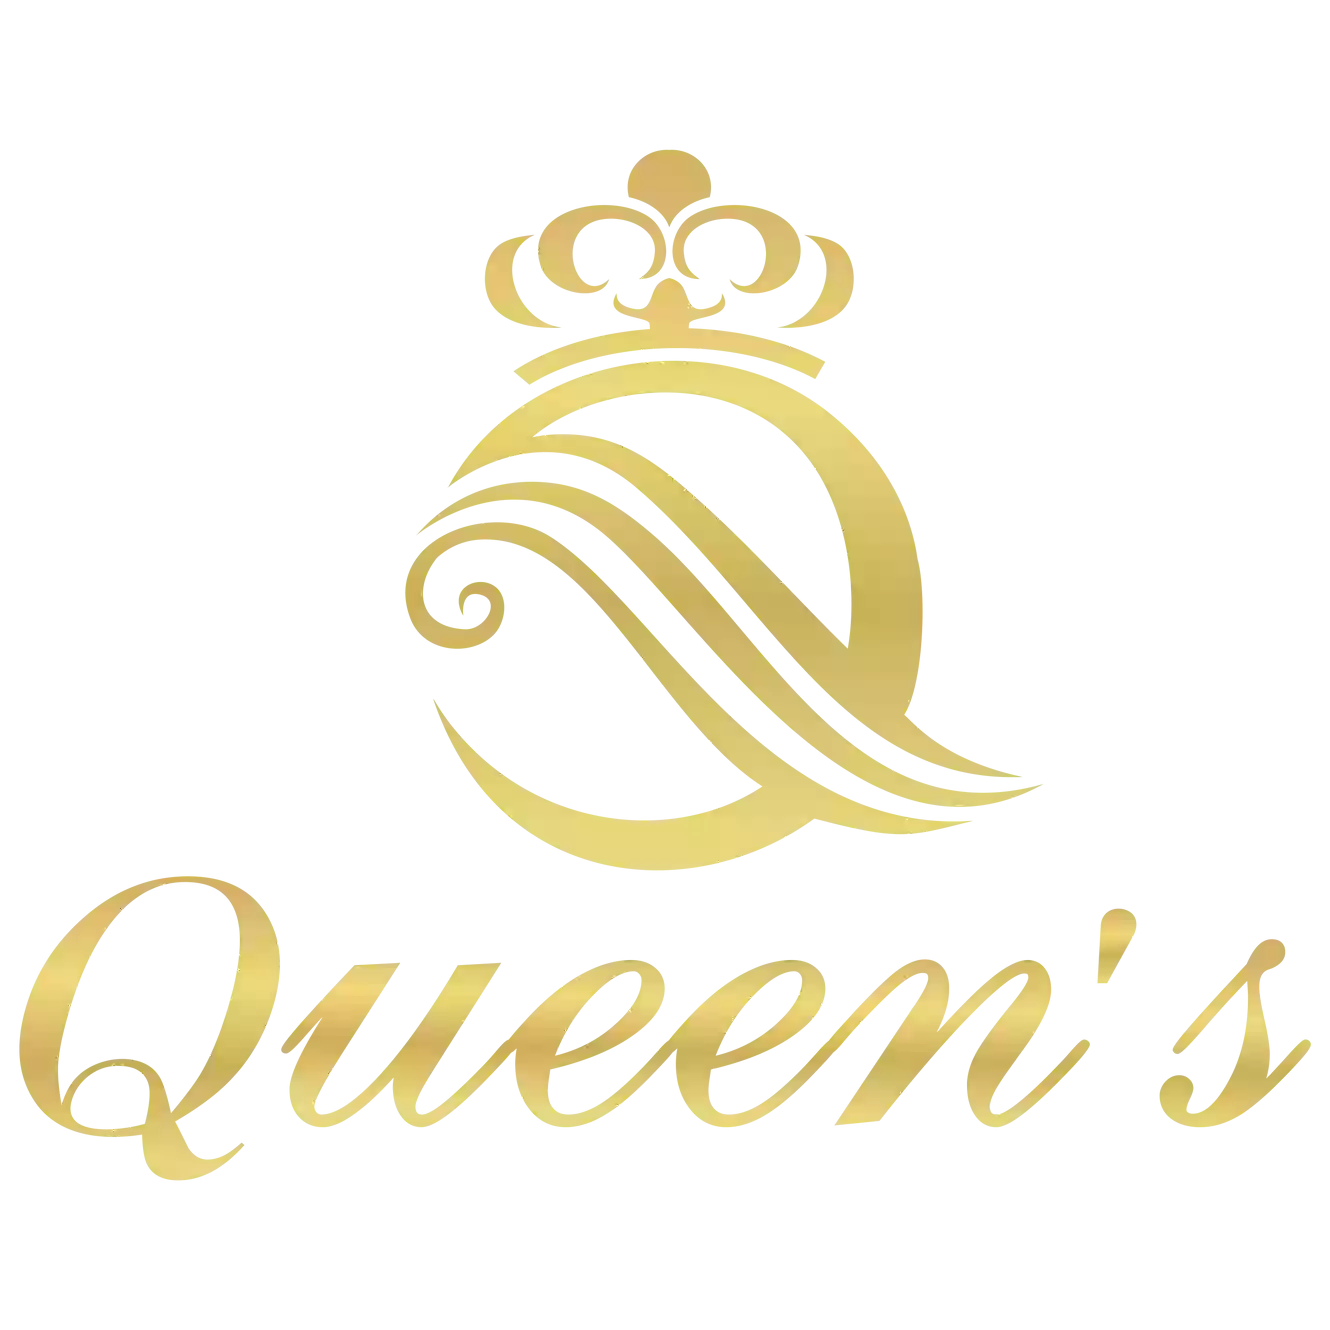 Queens Jewellery